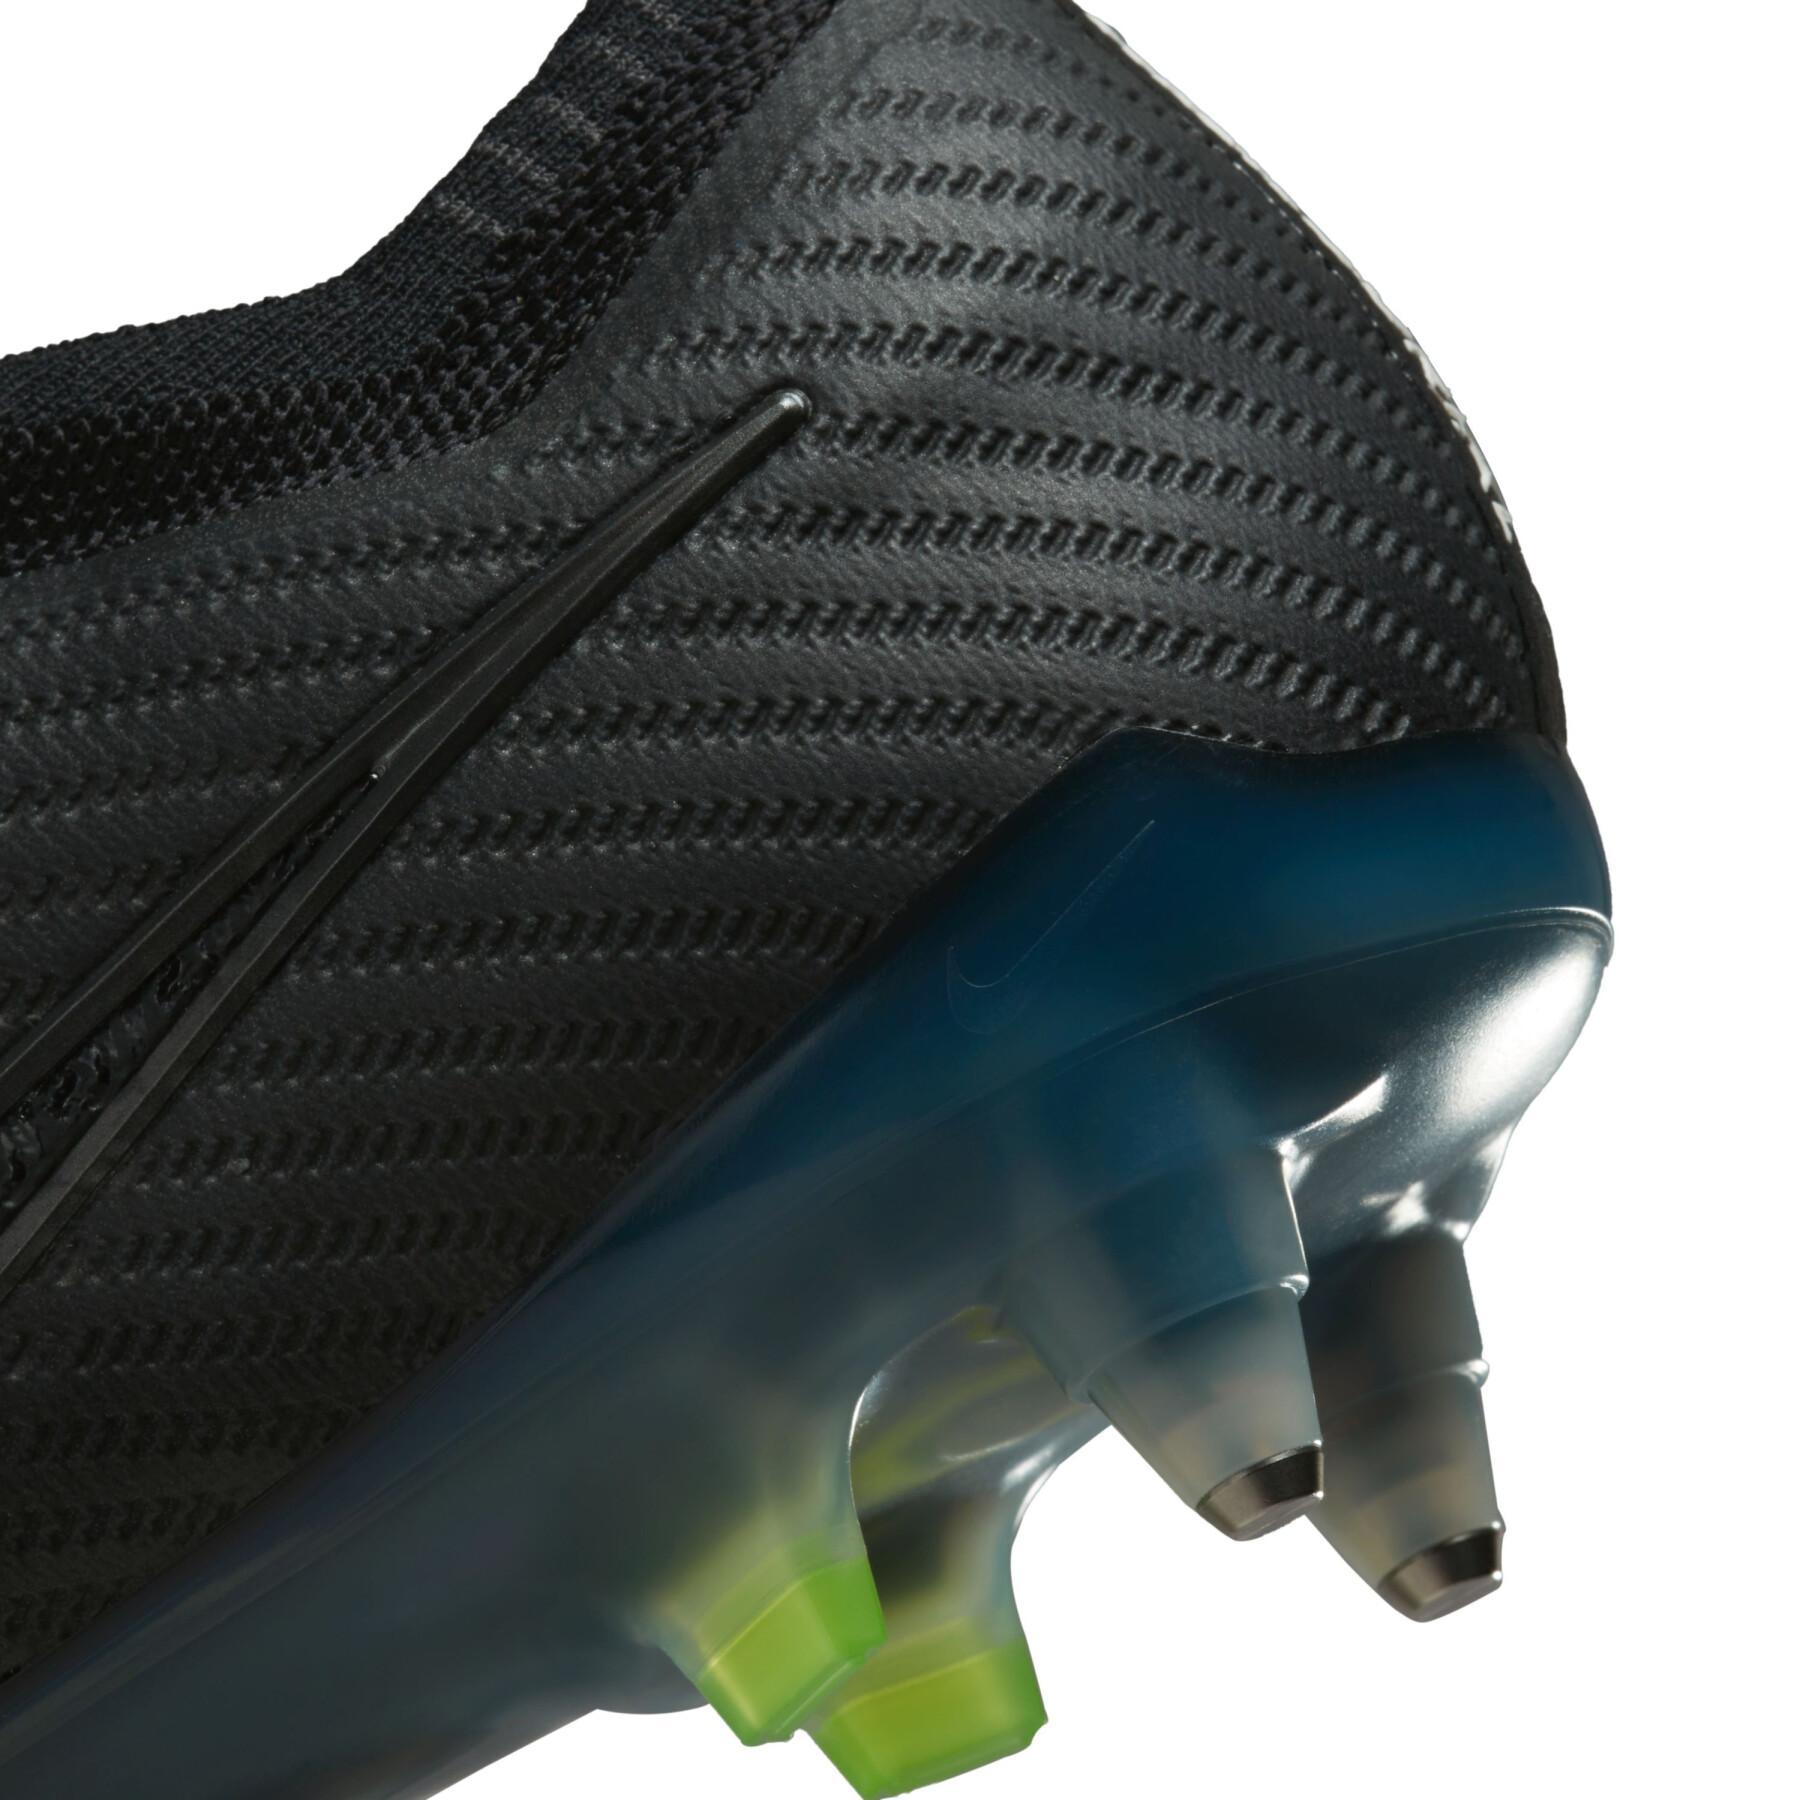 Scarpe da calcio Nike Zoom Mercurial Vapor 15 Elite SG-Pro - Shadow Black Pack